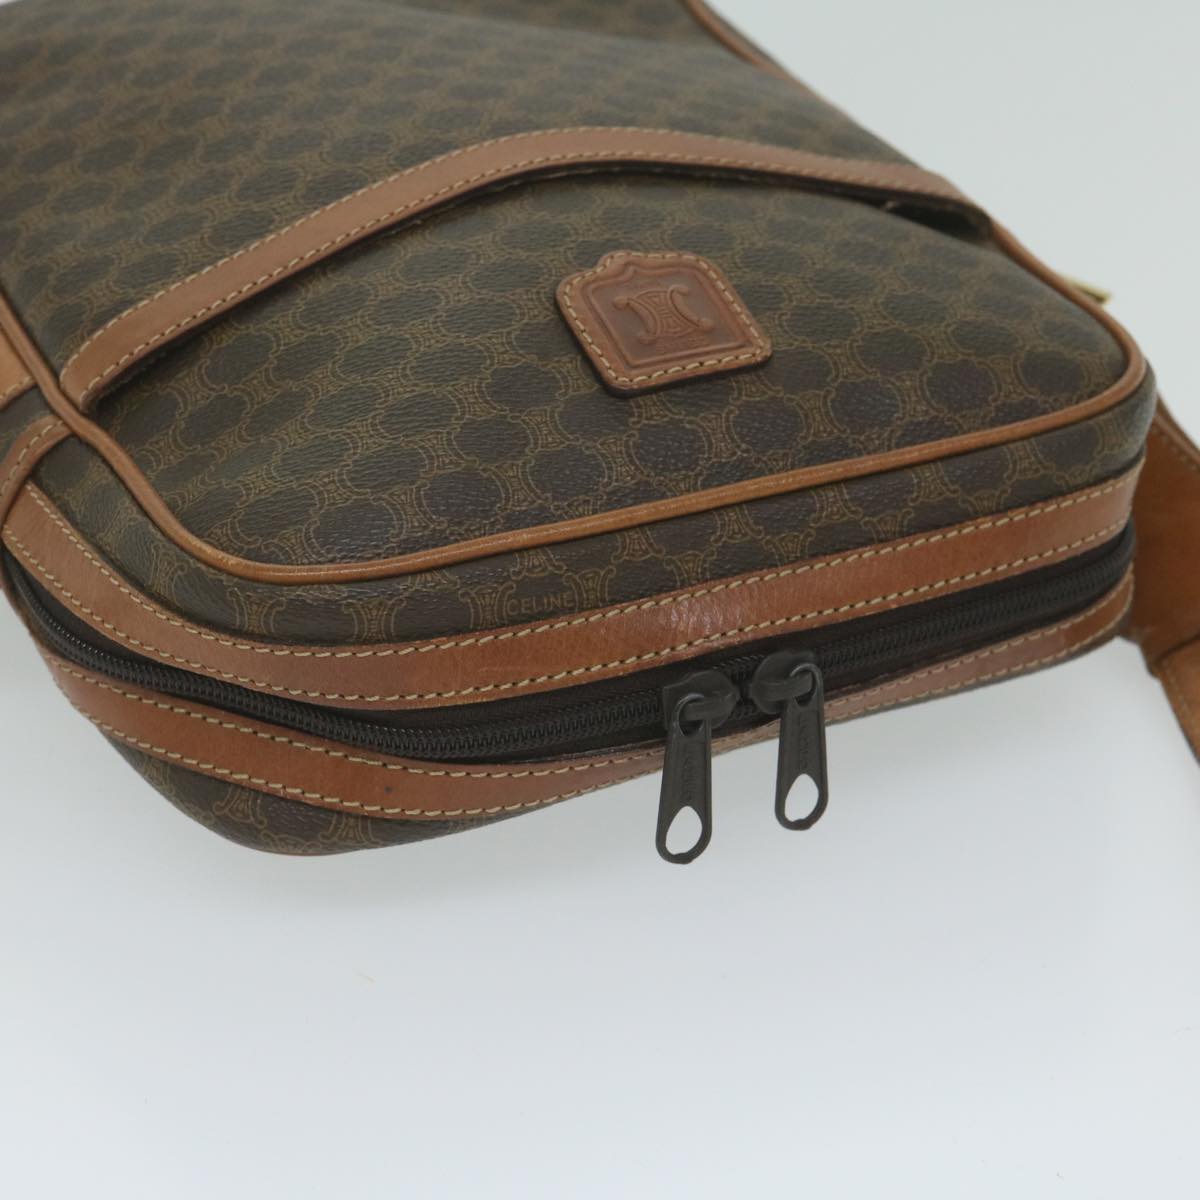 CELINE Macadam Canvas Shoulder Bag PVC Leather Brown Auth 62822